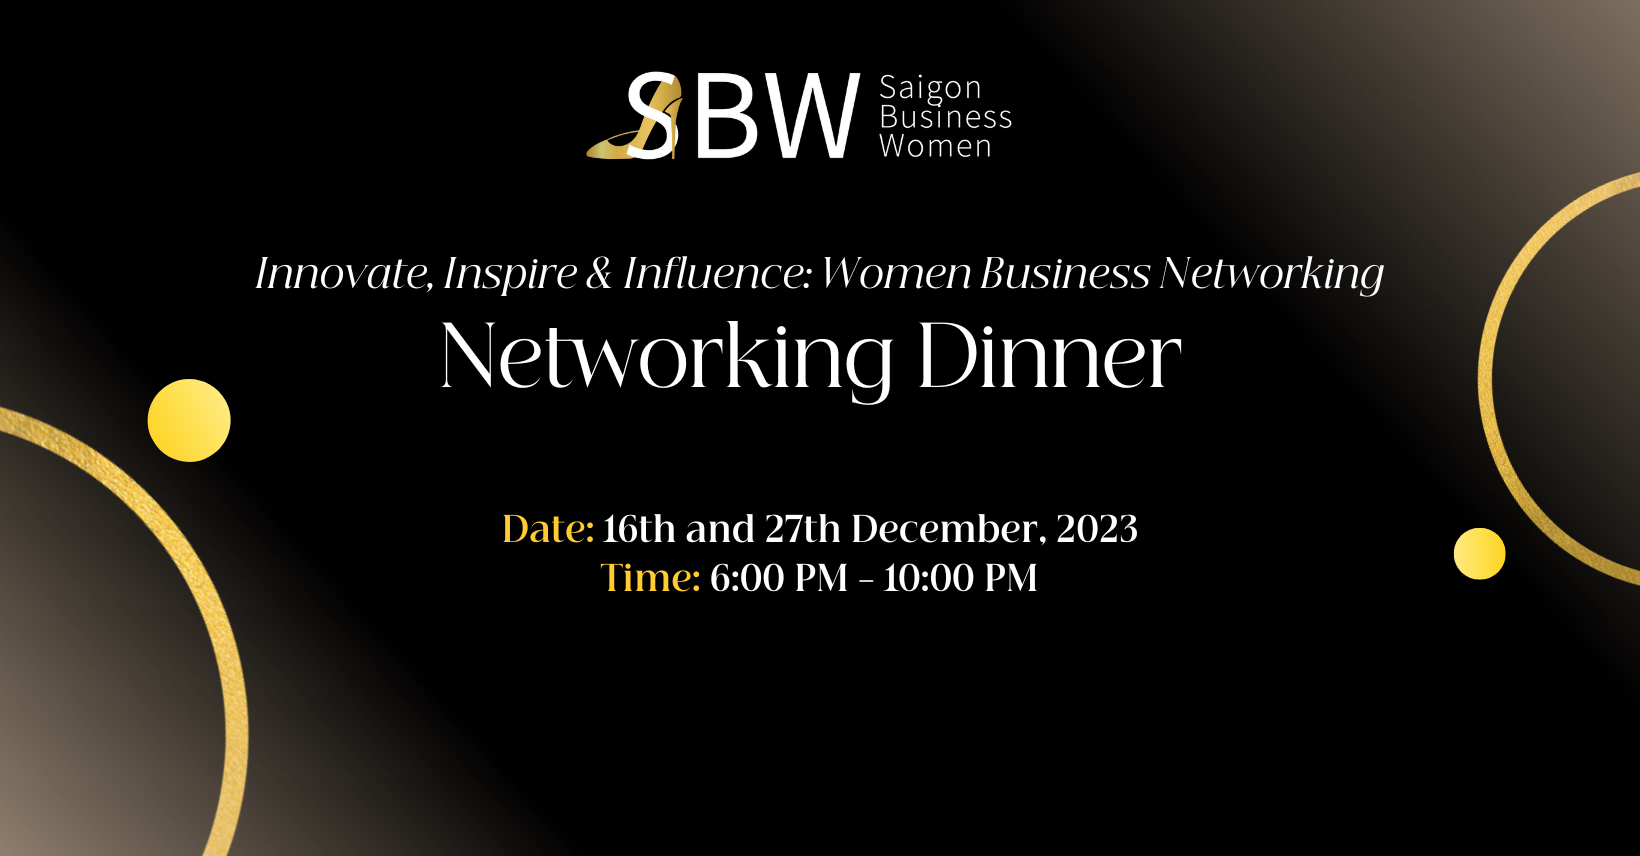 SaiGon Business Women Event